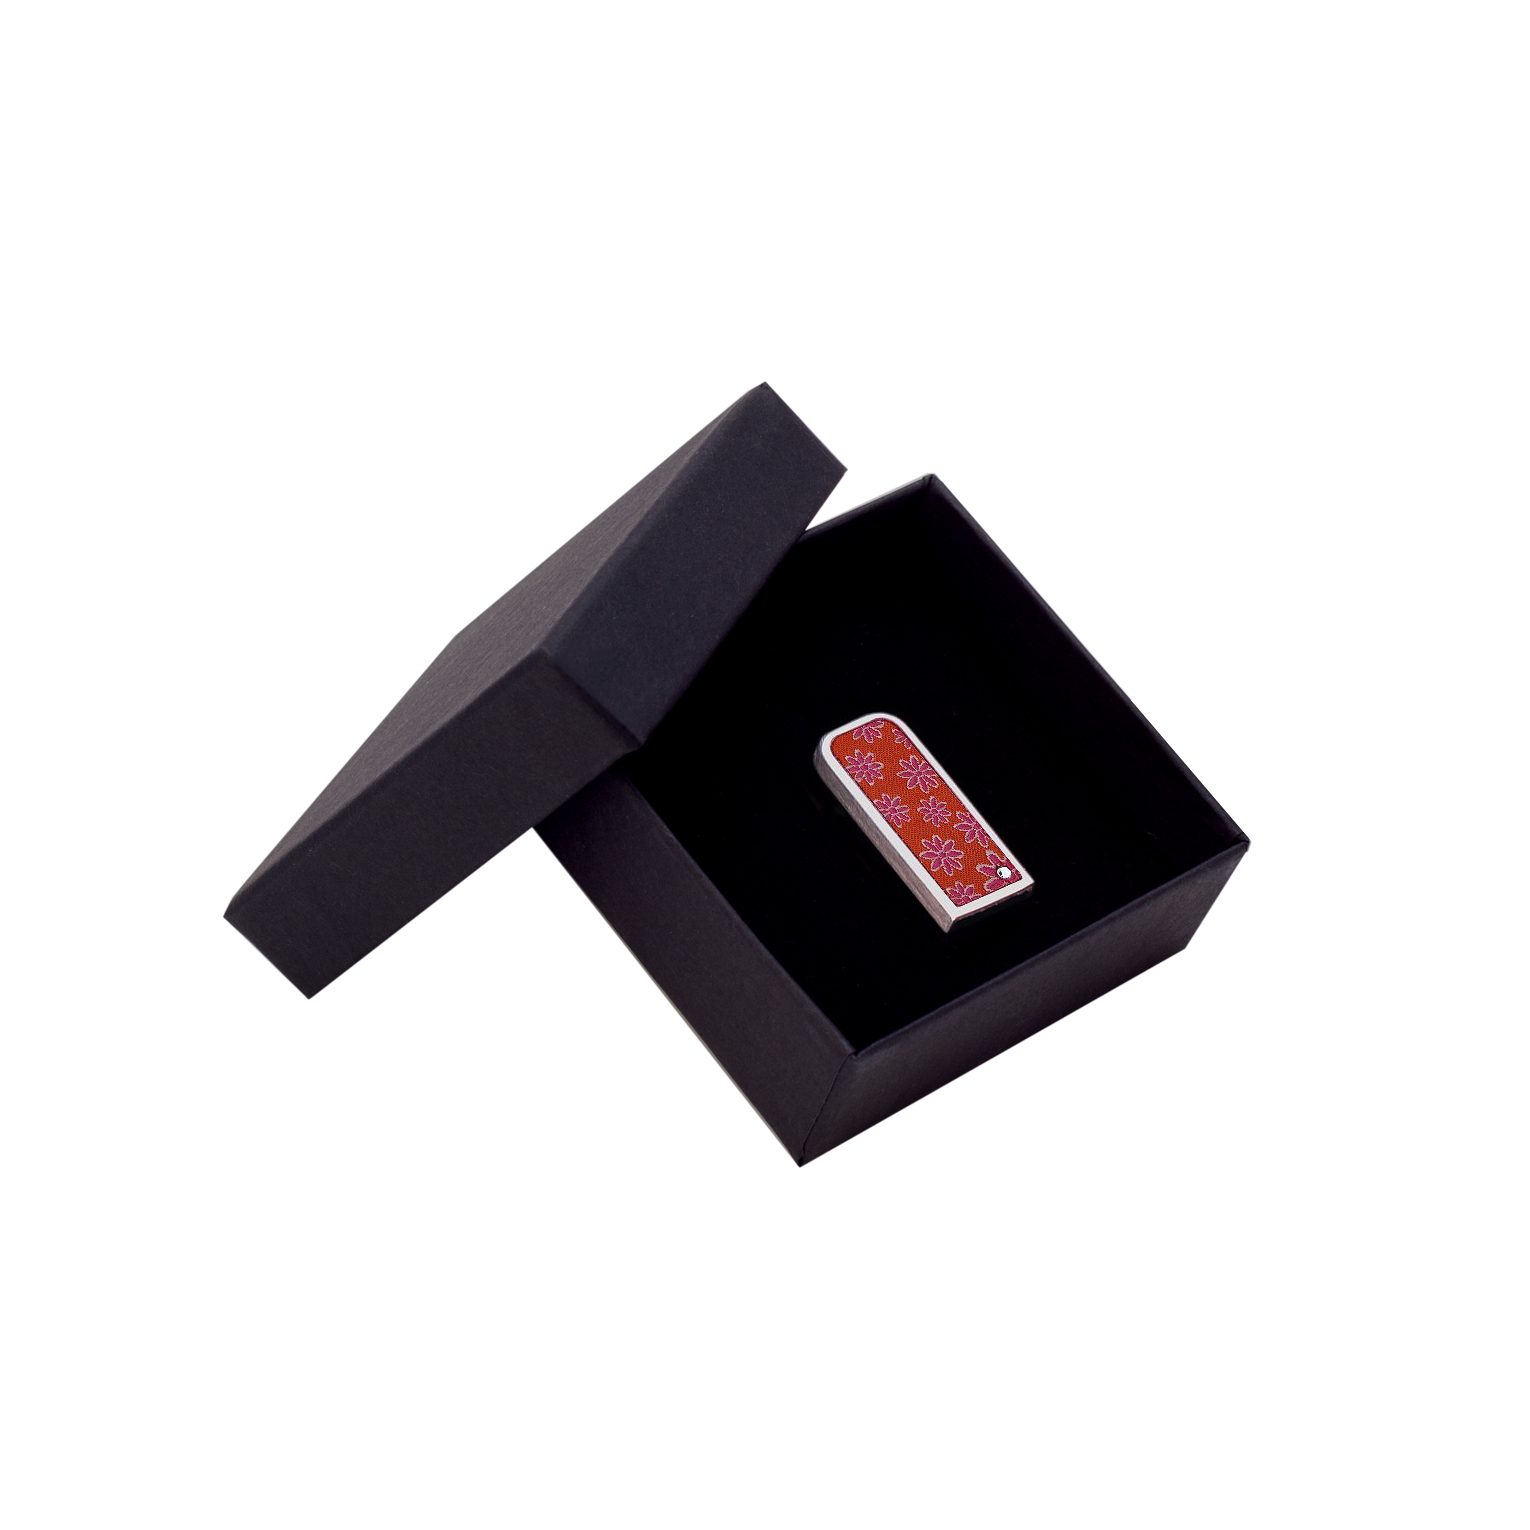 USB-Stick in Textiloptik als Werbegeschenk